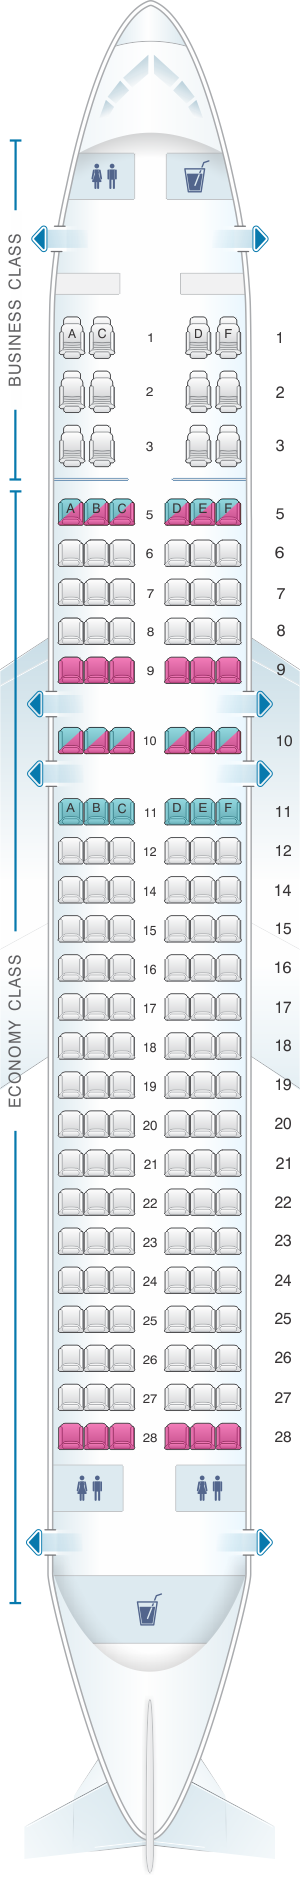 Seat Map Silkair Airbus A320 200 Seatmaestro